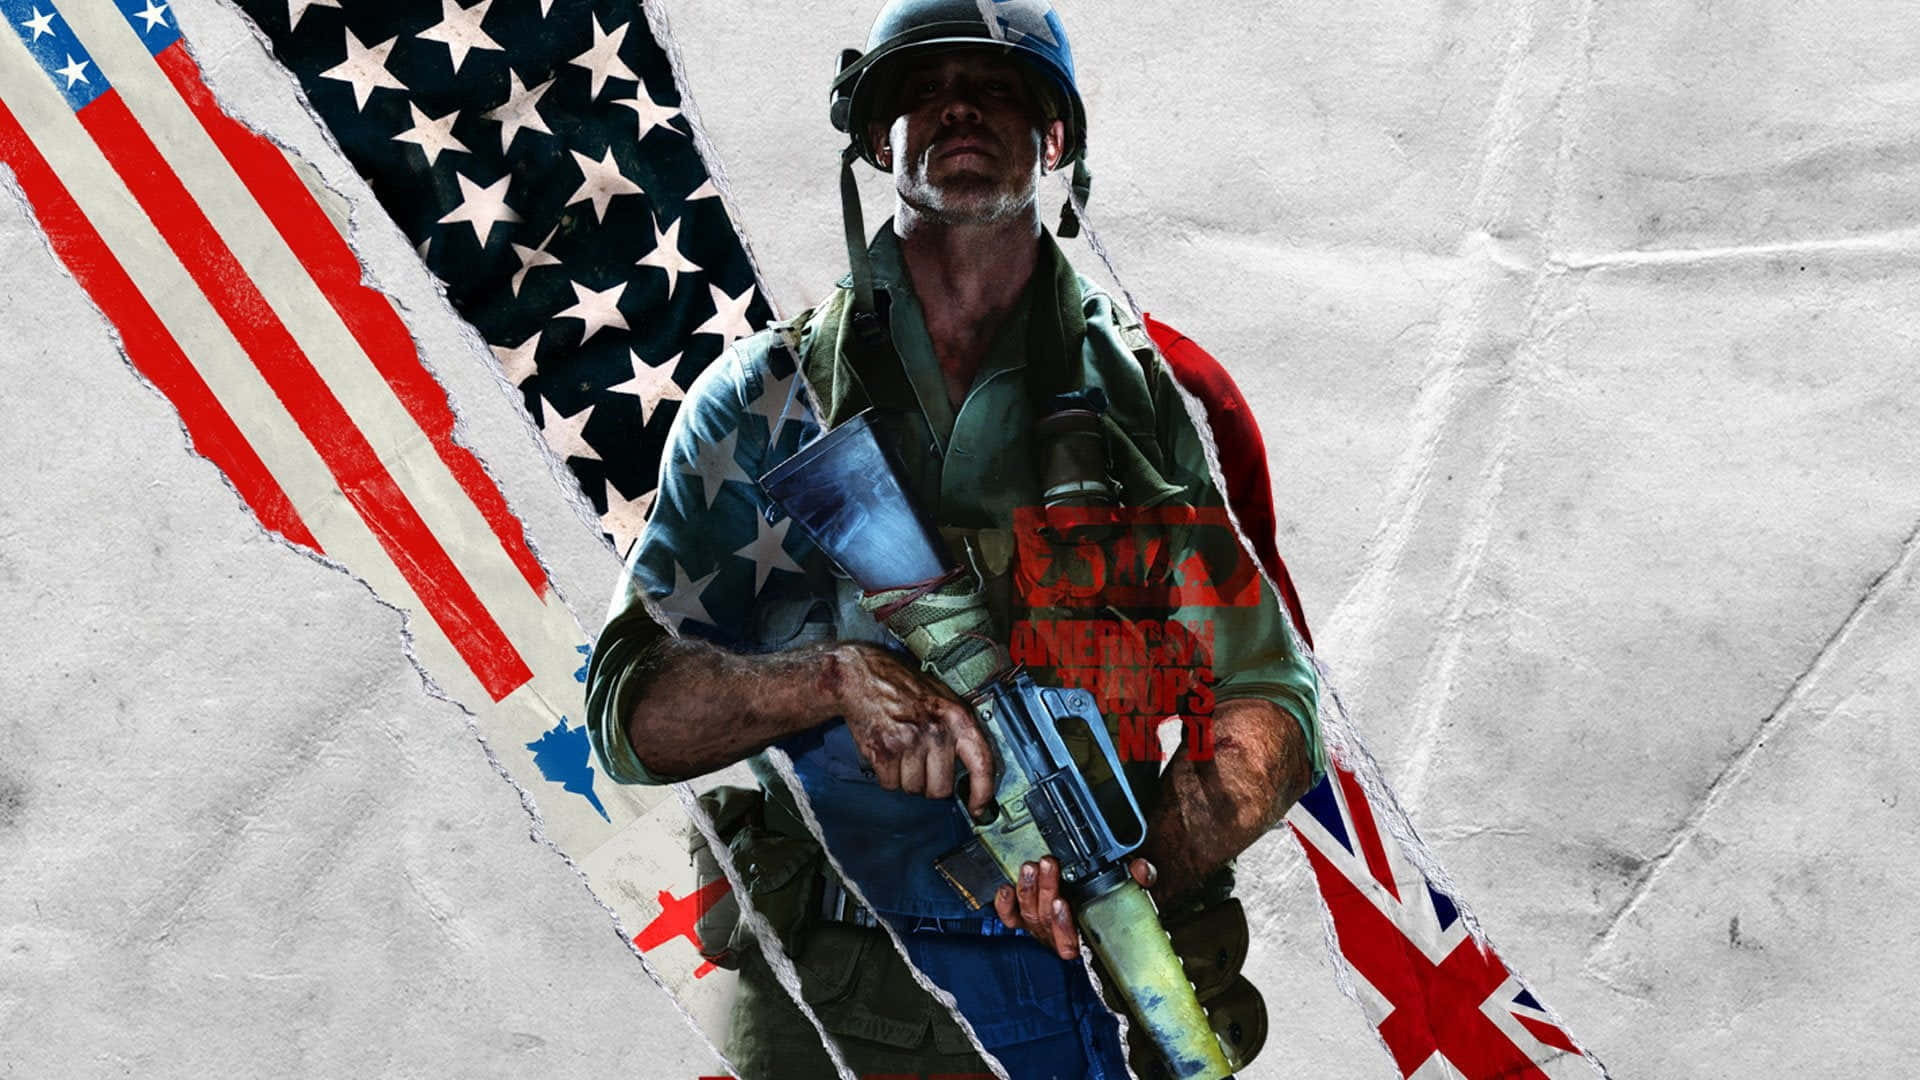 Hdhintergrundbild Von Call Of Duty Black Ops Cold War Für Den Desktop.